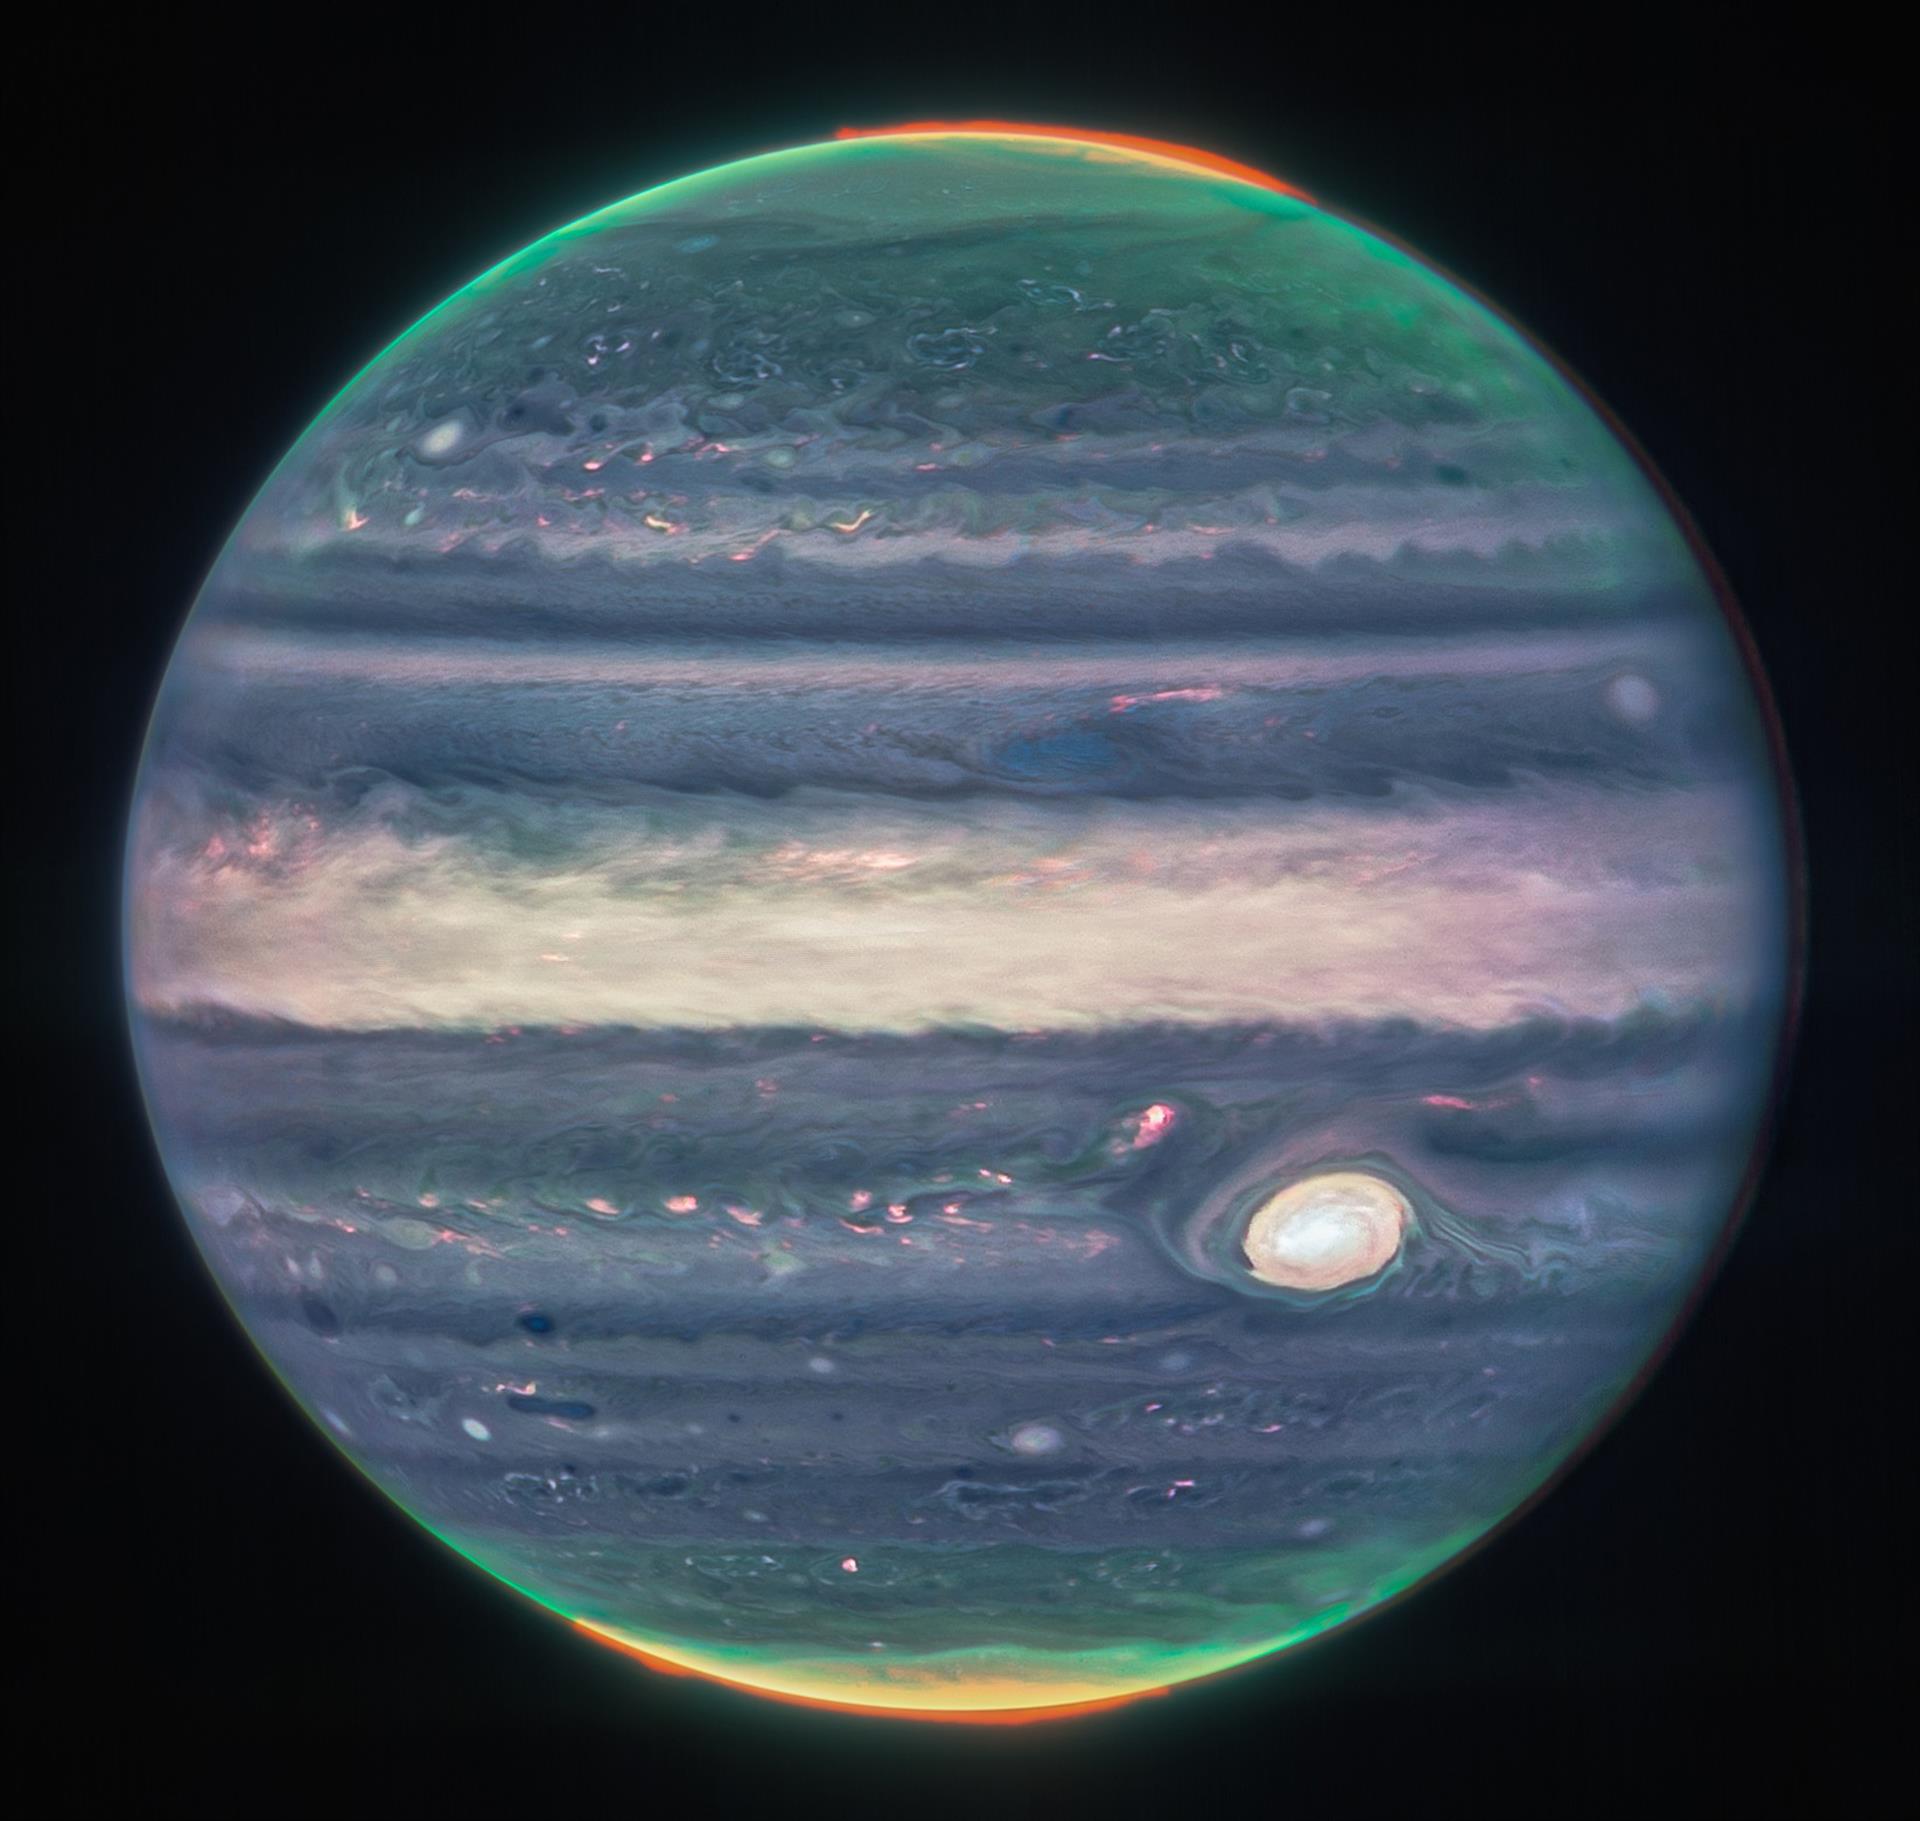 Fotografía cedida por la NASA donde se aprecia una imagen de júpiter tomada por la cámara de infrarrojo cercano (NIRcam) del Telescopio Espacial James Webb (JWST) y procesada por Judy Schmidt a partir de tres filtros: F360M (rojo), F212N (amarillo-verde) y F150W2 (cian), y alineación debido a la rotación del planeta. EFE/ Nasa/esa/csa/equipo Ers SOLO USO EDITORIAL SOLO DISPONIBLE PARA ILUSTRAR LA NOTICIA QUE ACOMPAÑA (CRÉDITO OBLIGATORIO)
